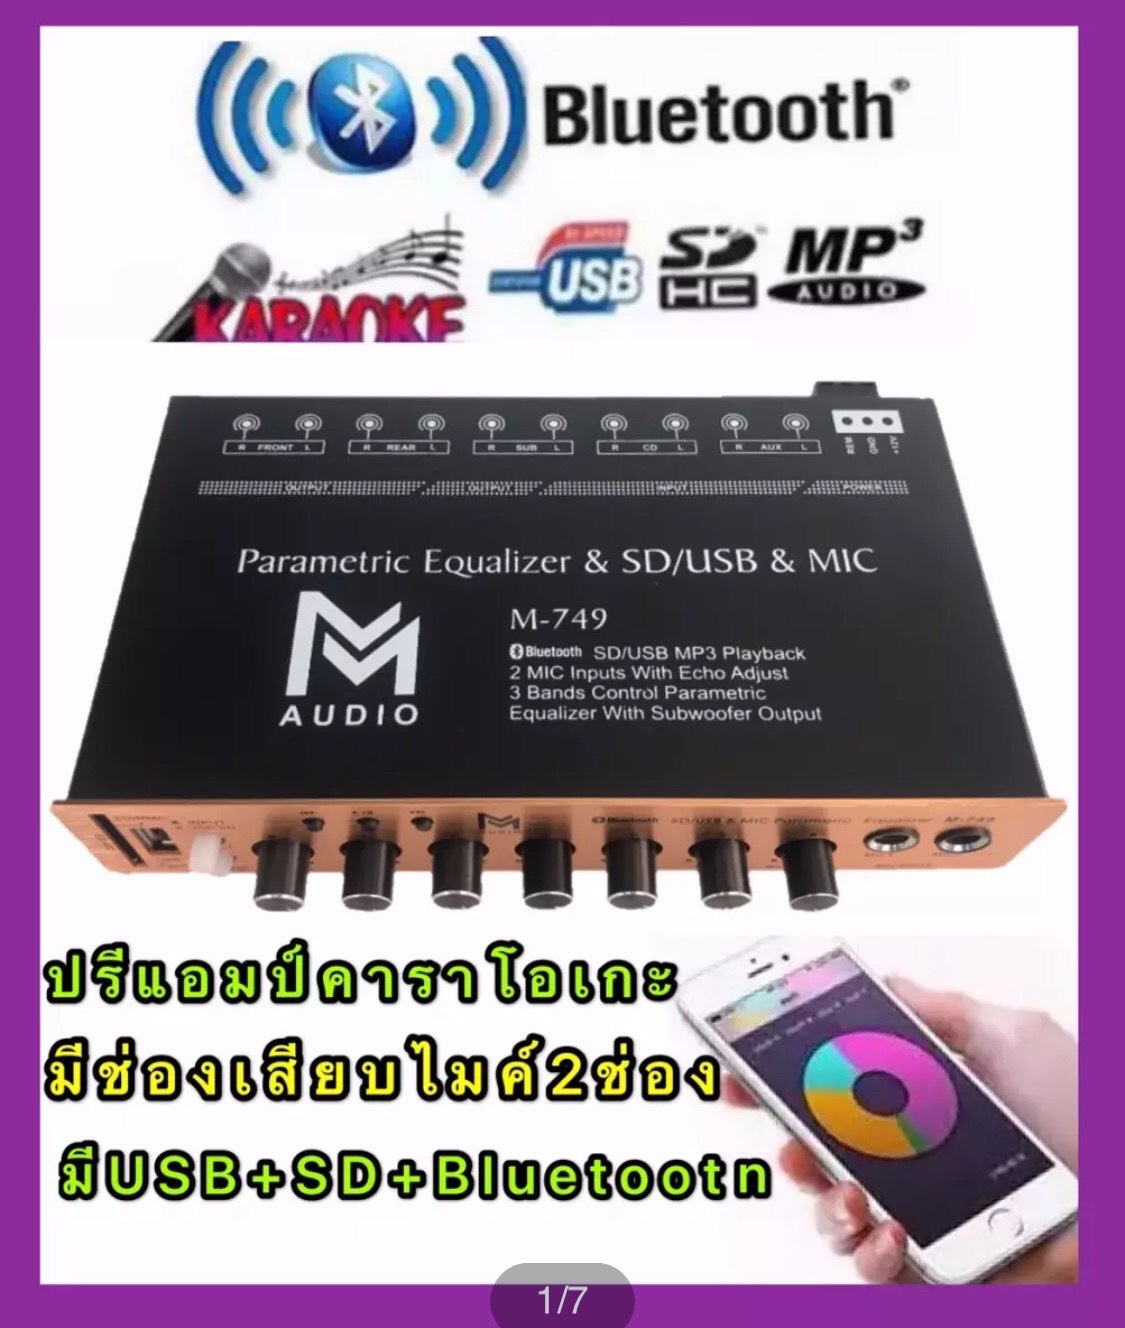 ปรีแอมป์คาราโอเกะรถยนต์ MP3 มีช่องเสียบไมค์2ช่อง มีUSB+SD มี Bluetooth รุ่น M-749